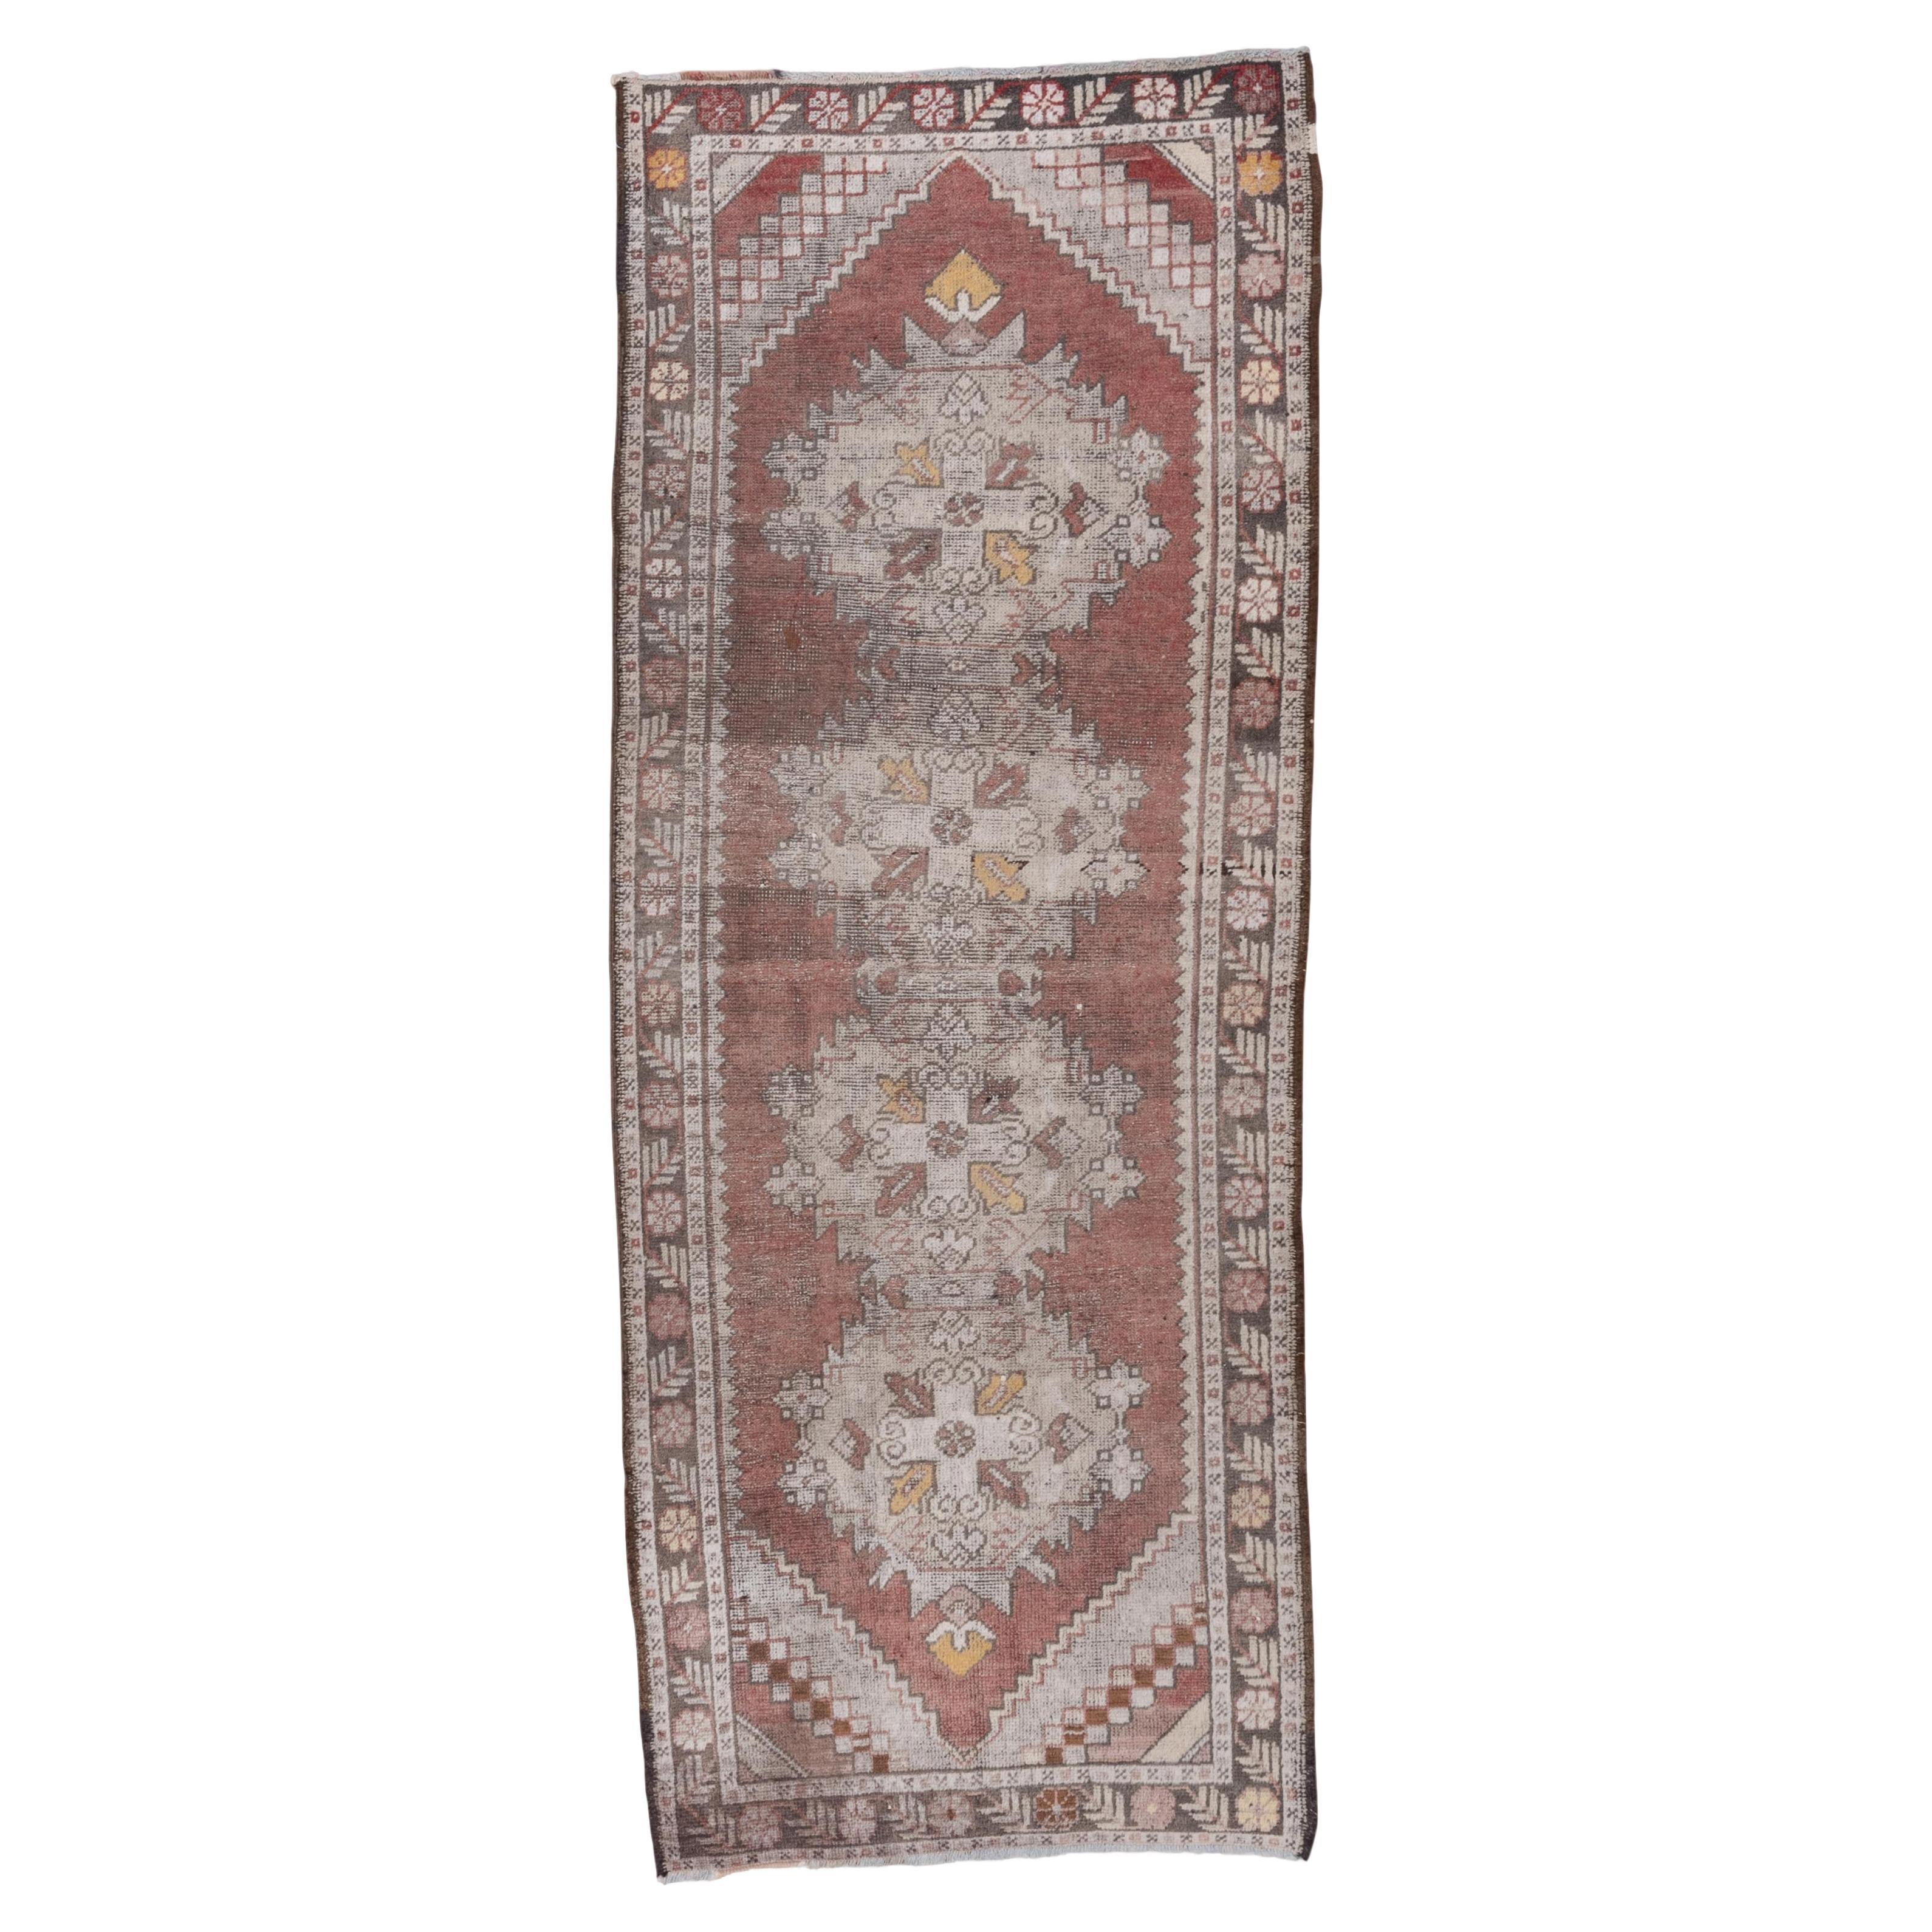 Türkischer antiker Teppich in schöner geometrischer Stammeskunst